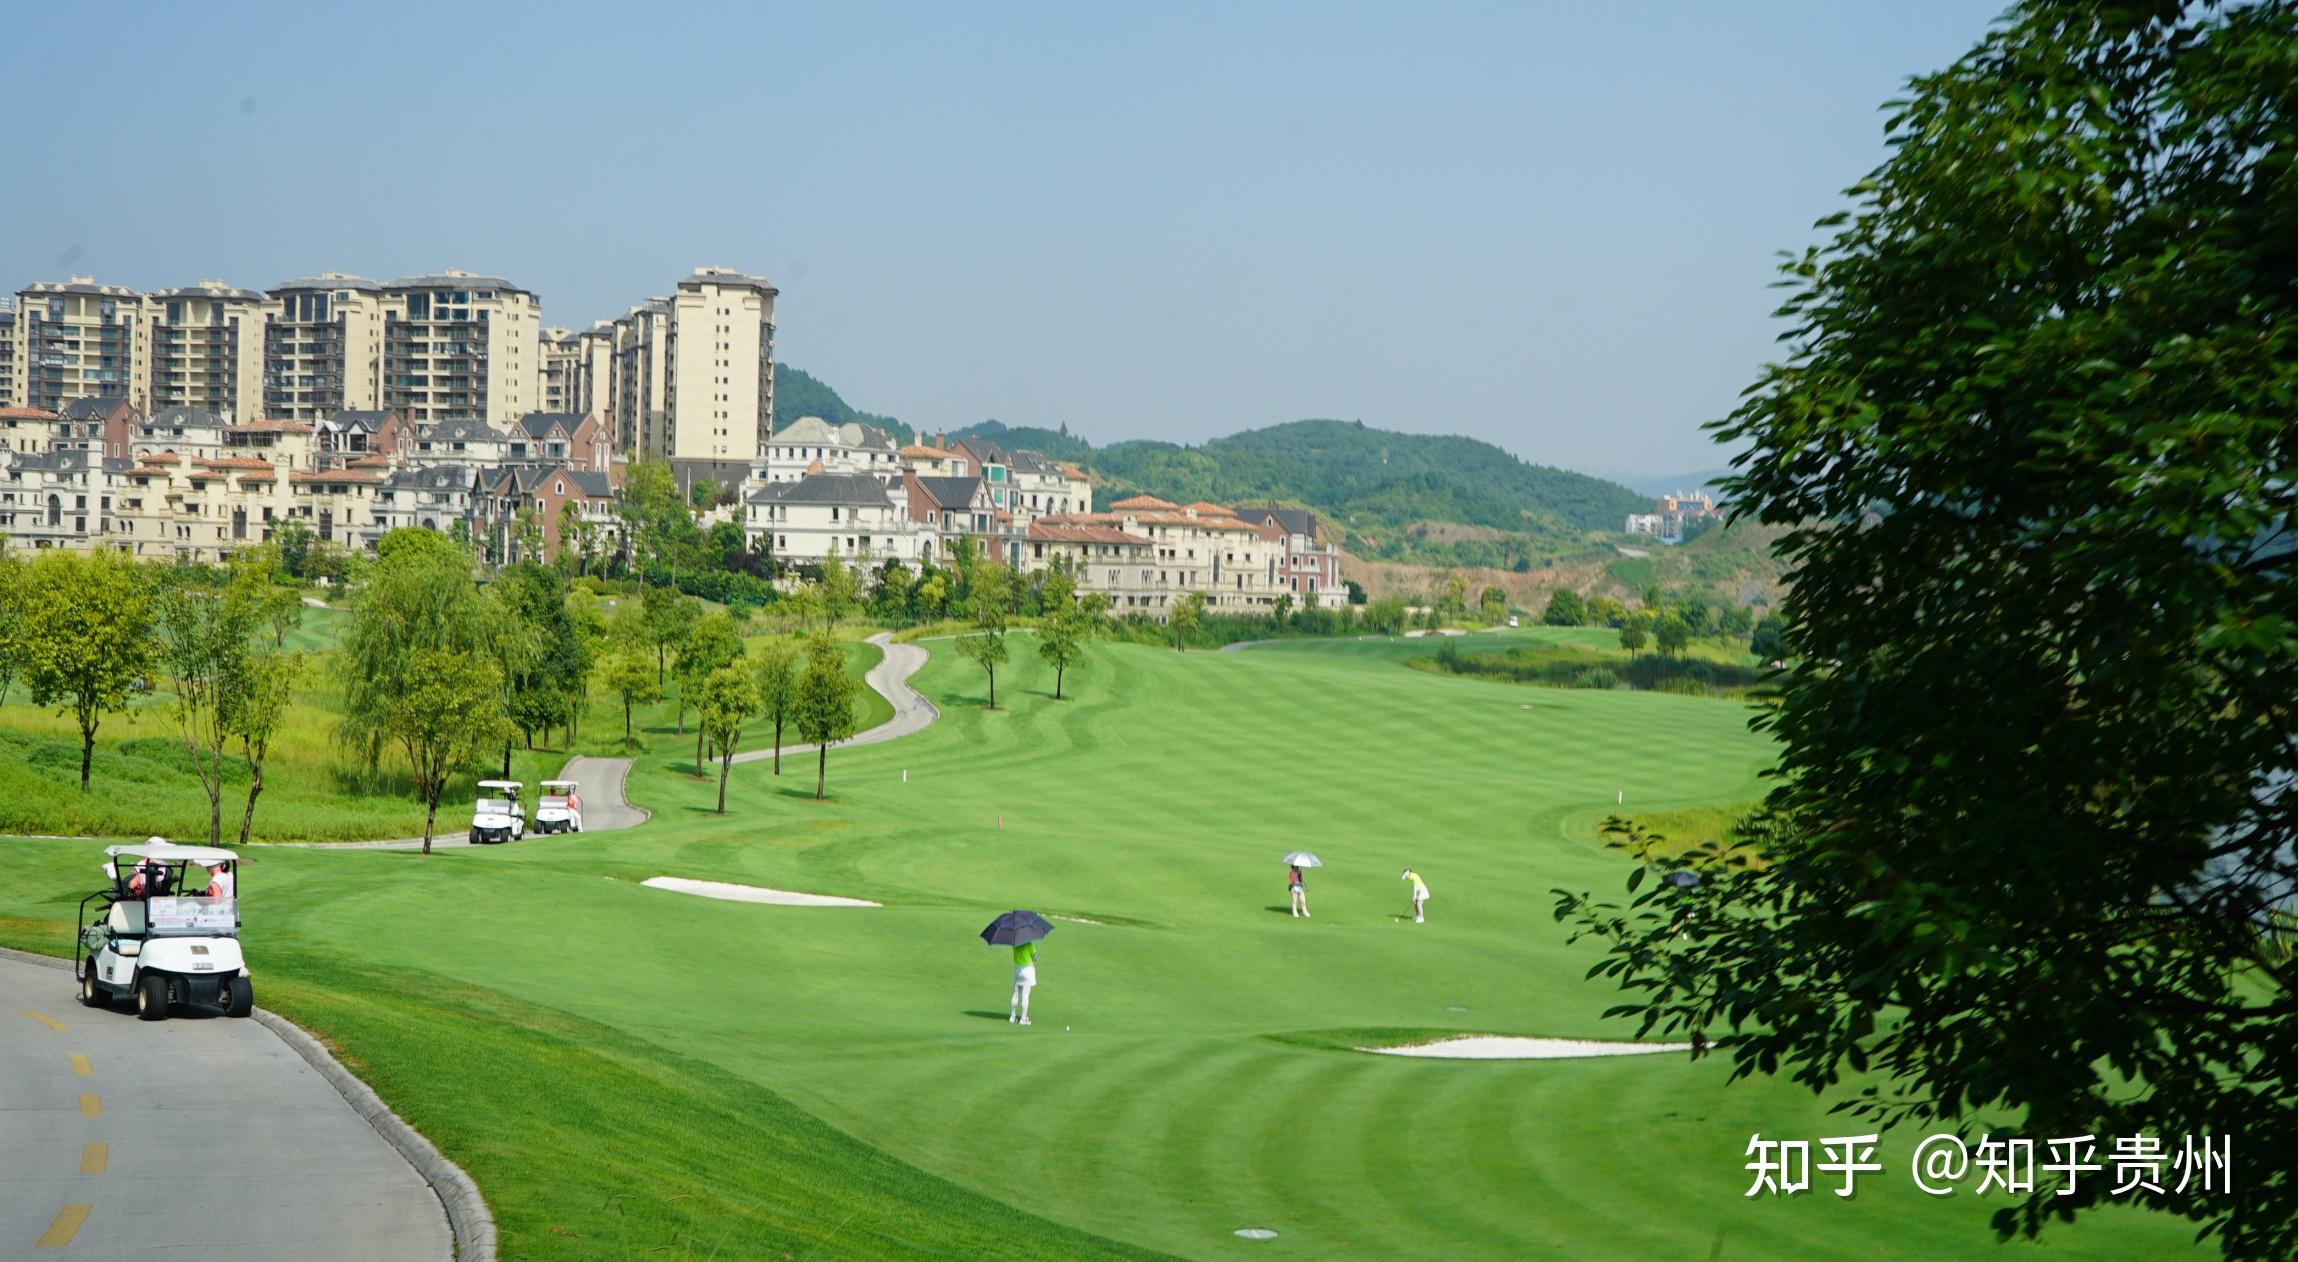 国台杯2021贵州高尔夫球员锦标赛暨贵州省青少年高尔夫球锦标赛开赛